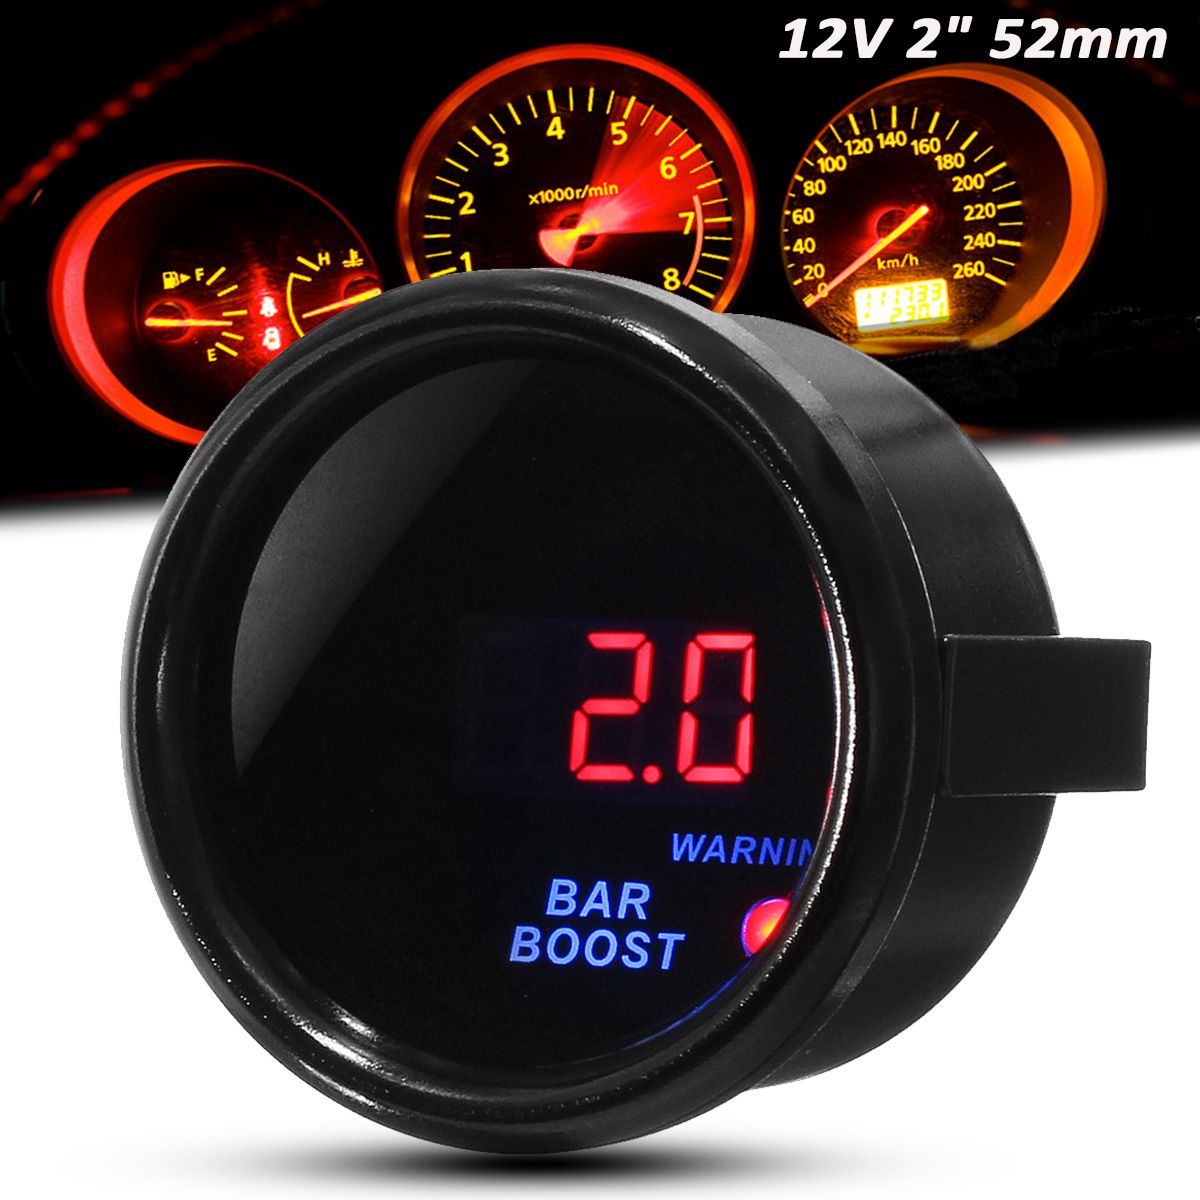 2quot-52mm--12-BAR-Turbocharger-Boost-Gauge-Digital-LED-Display-Black-Face-Car-Meter-with-Sensor-1537928